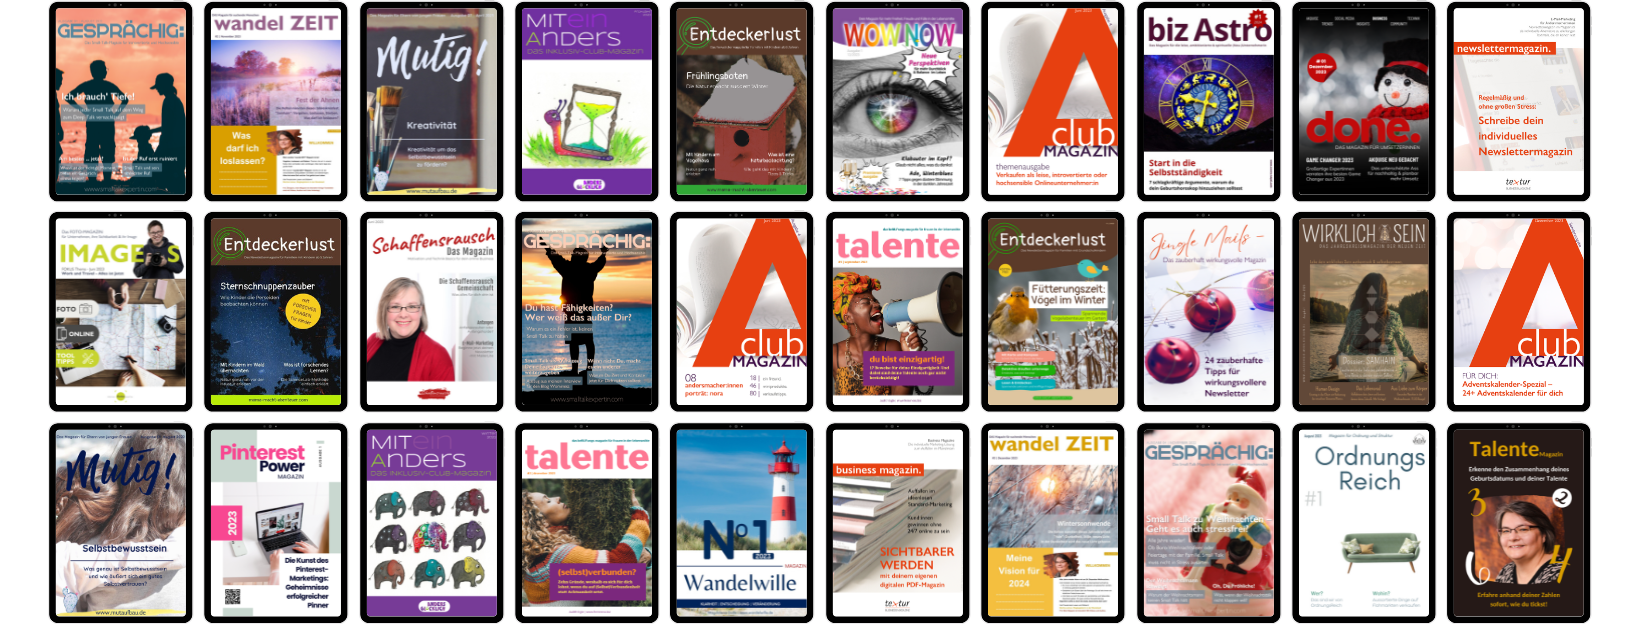 Mini-Magazine bieten vielfältige Möglichkeiten für dein Business